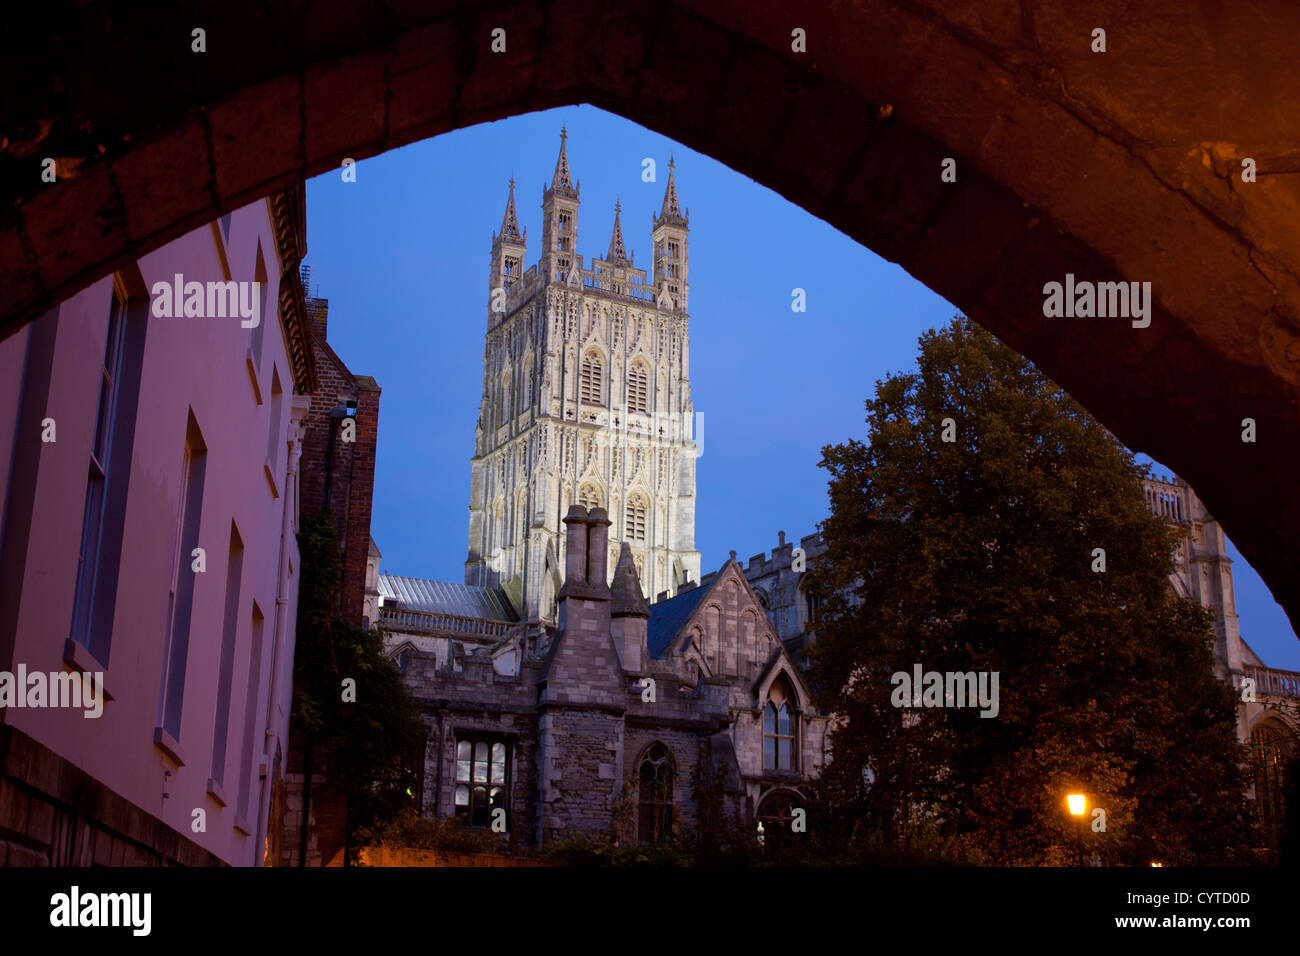 La cathédrale de Gloucester, au crépuscule / Crépuscule / nuit vu par archway of St Mary's Gate Gloucestershire England UK Banque D'Images